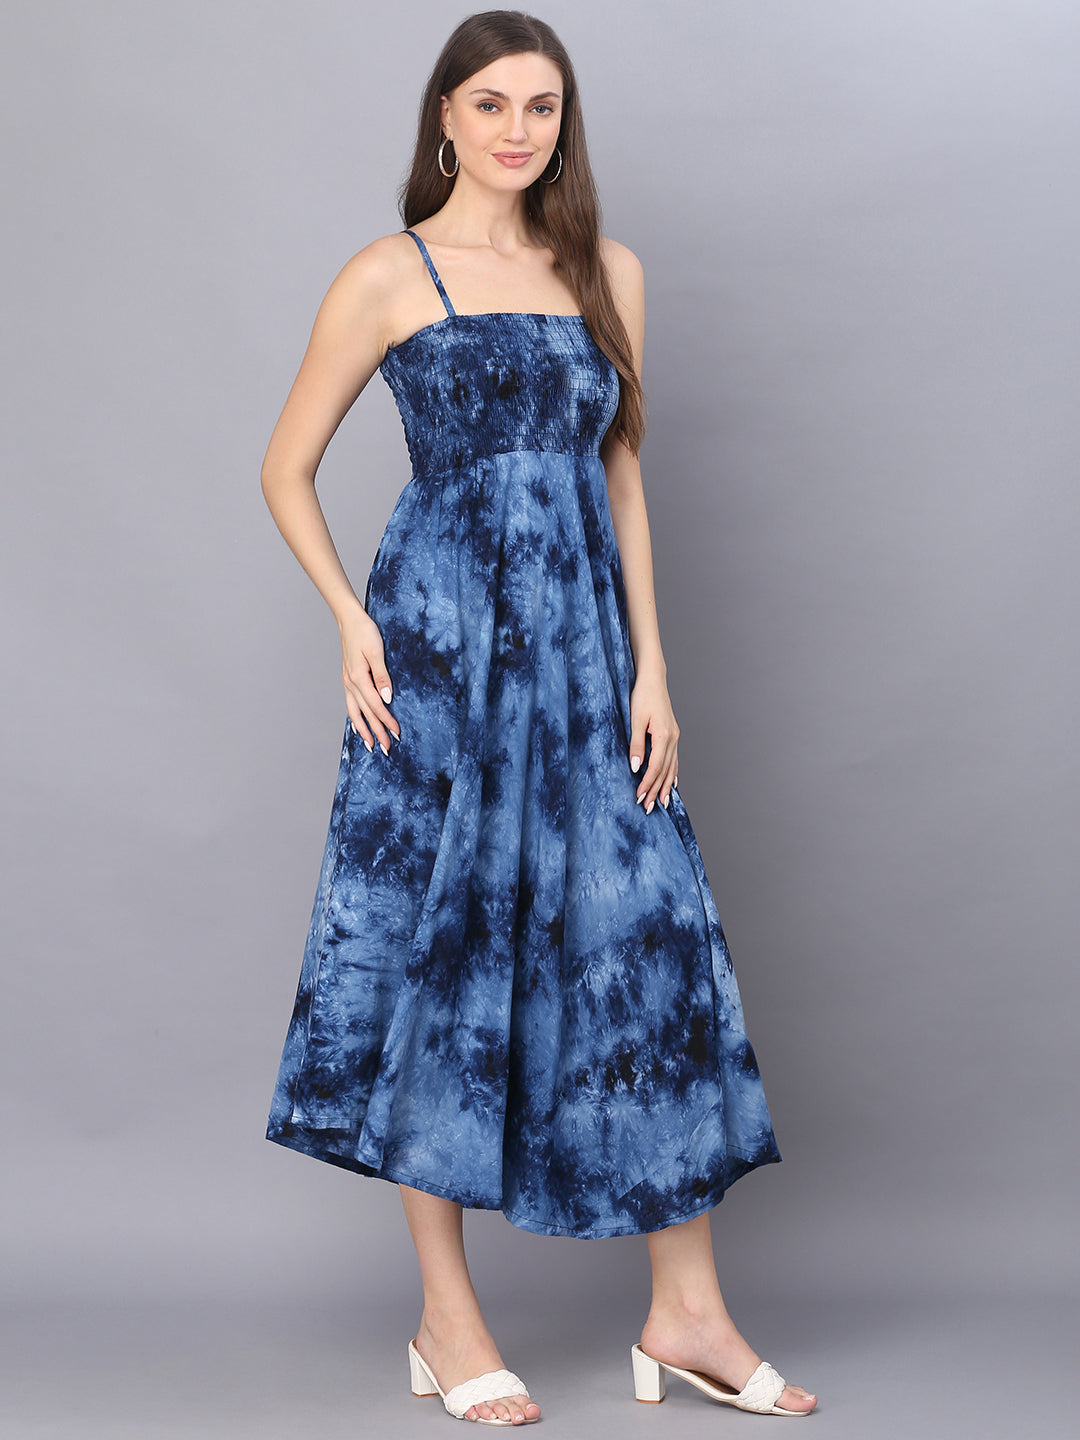 Tie Dye Printed Navy Blue Shoulder Straps Long Bobbin Gown Dress